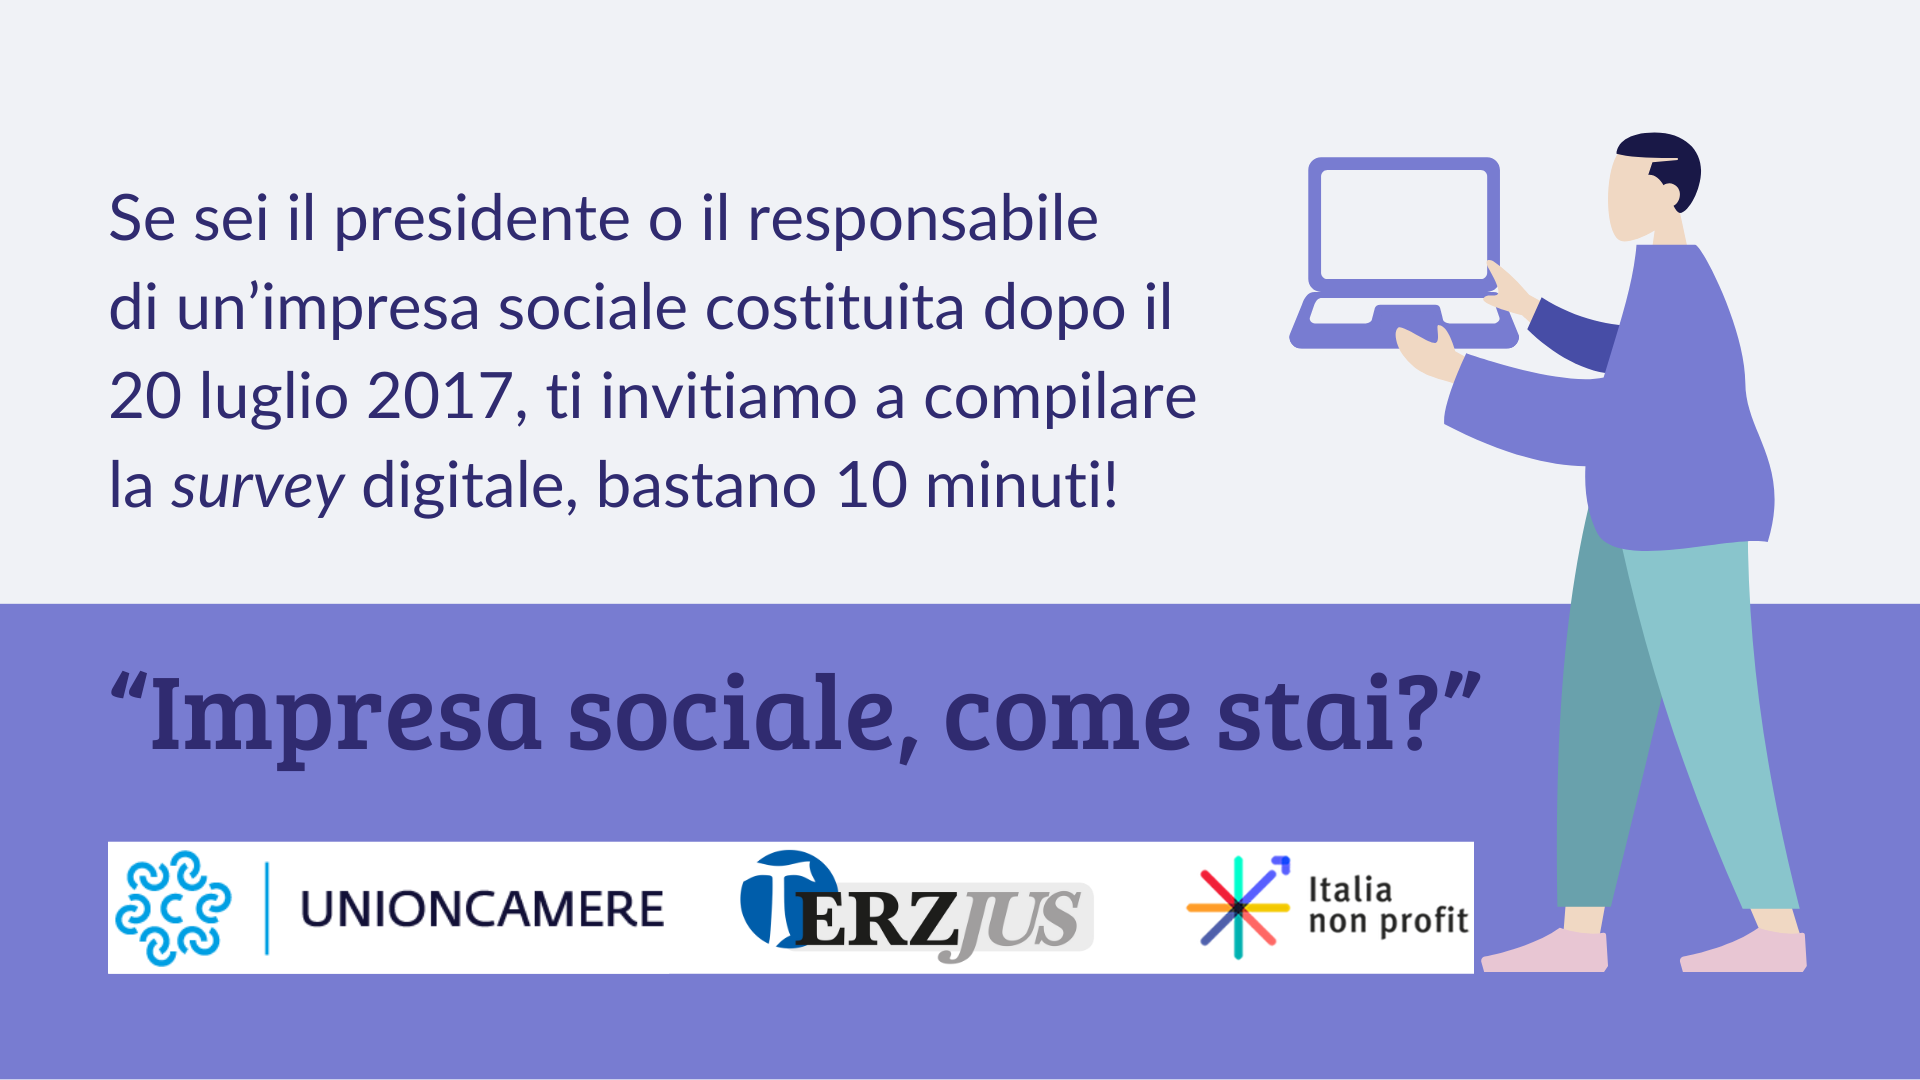 Unioncamere avvia l’indagine “Impresa sociale come stai?” sulle nuove imprese sociali italiane